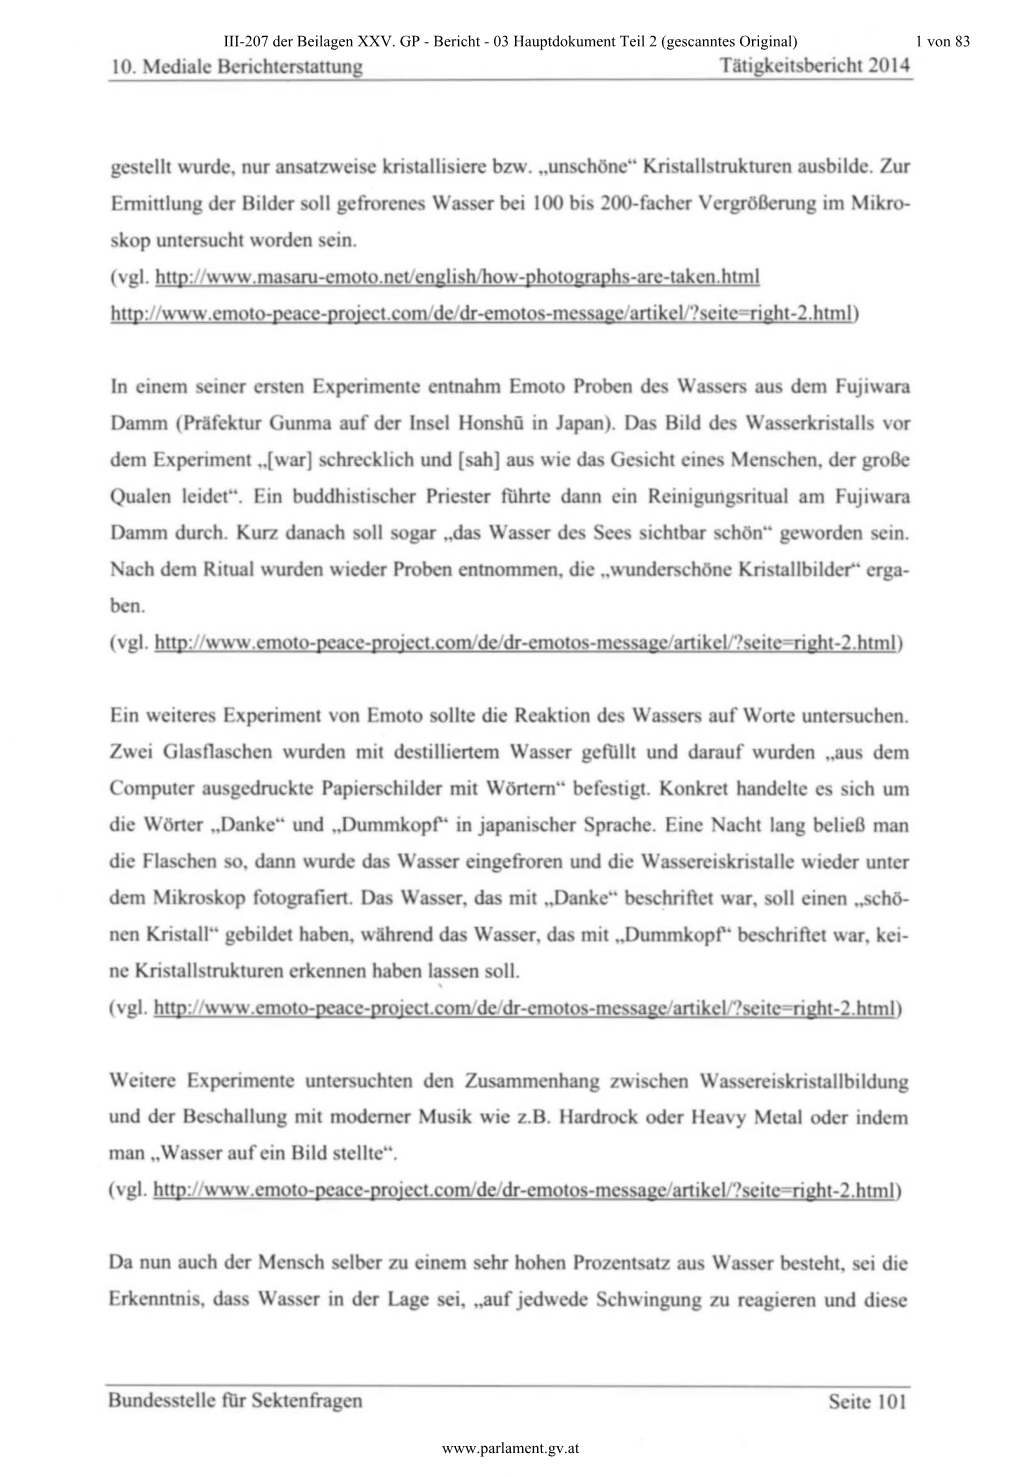 03 Hauptdokument Teil 2 (Gescanntes Original) / PDF, 12407 KB